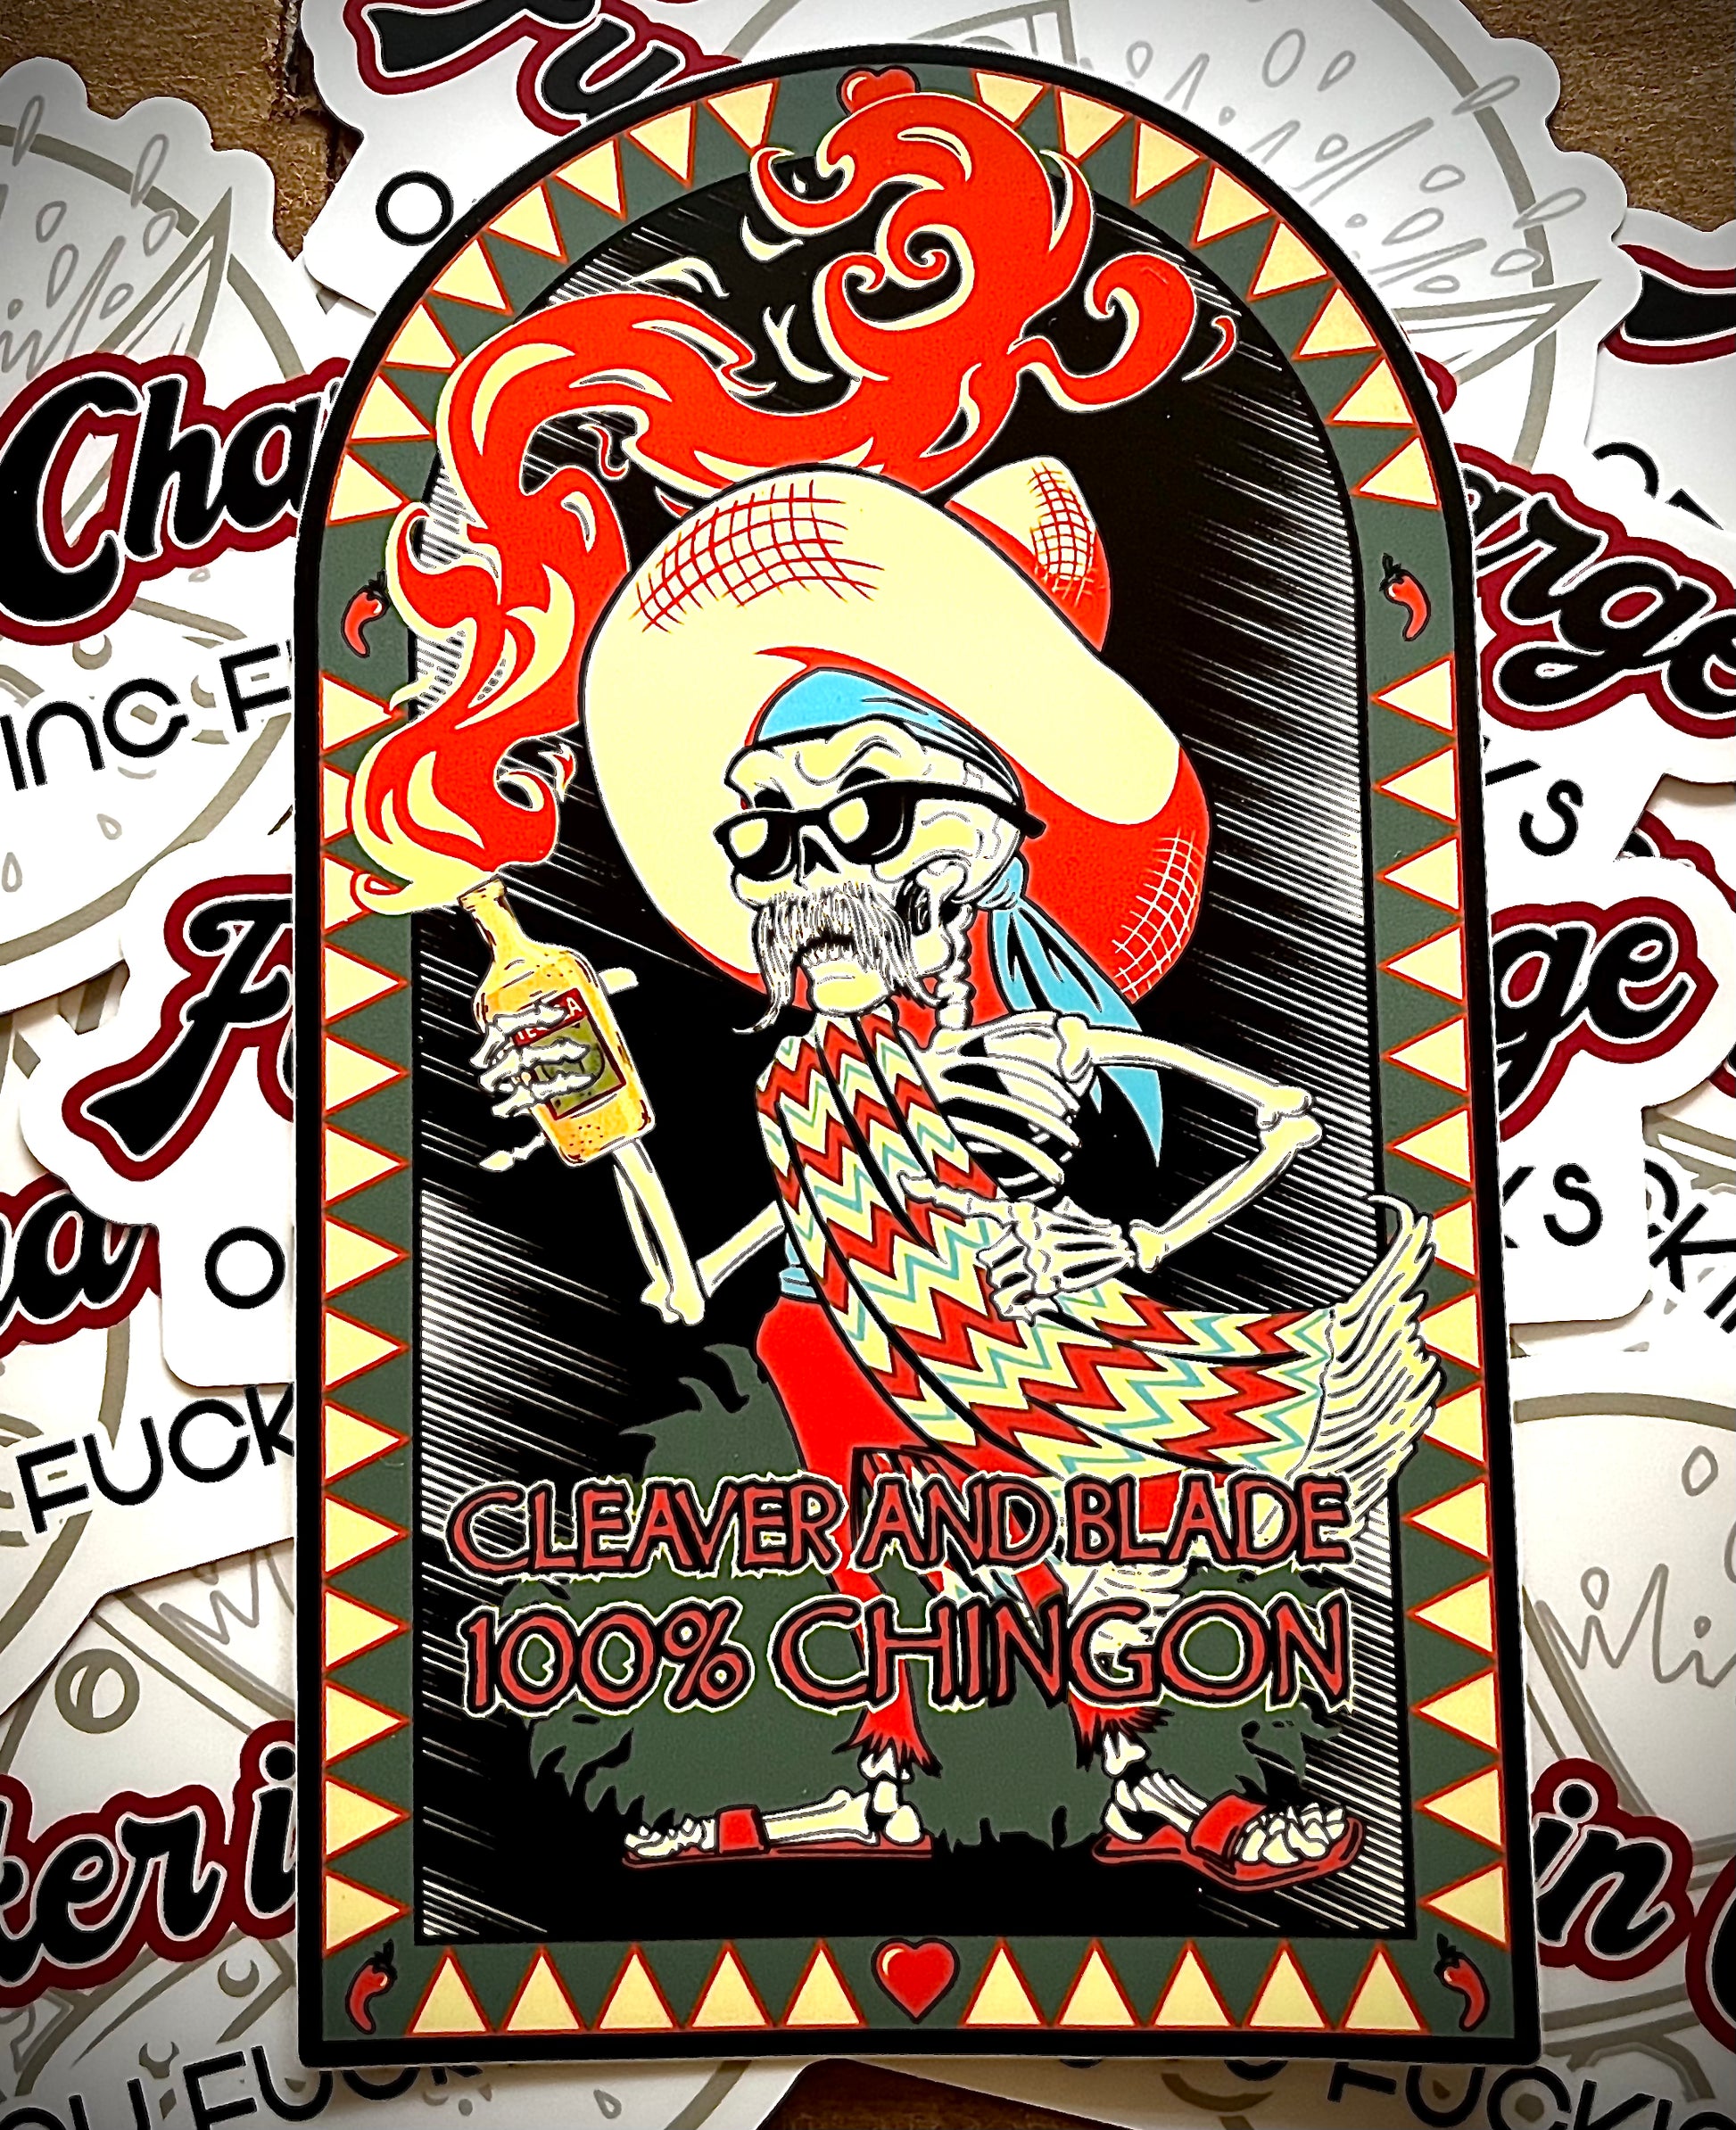 100% Chingon Sticker Cleaverandblade.com